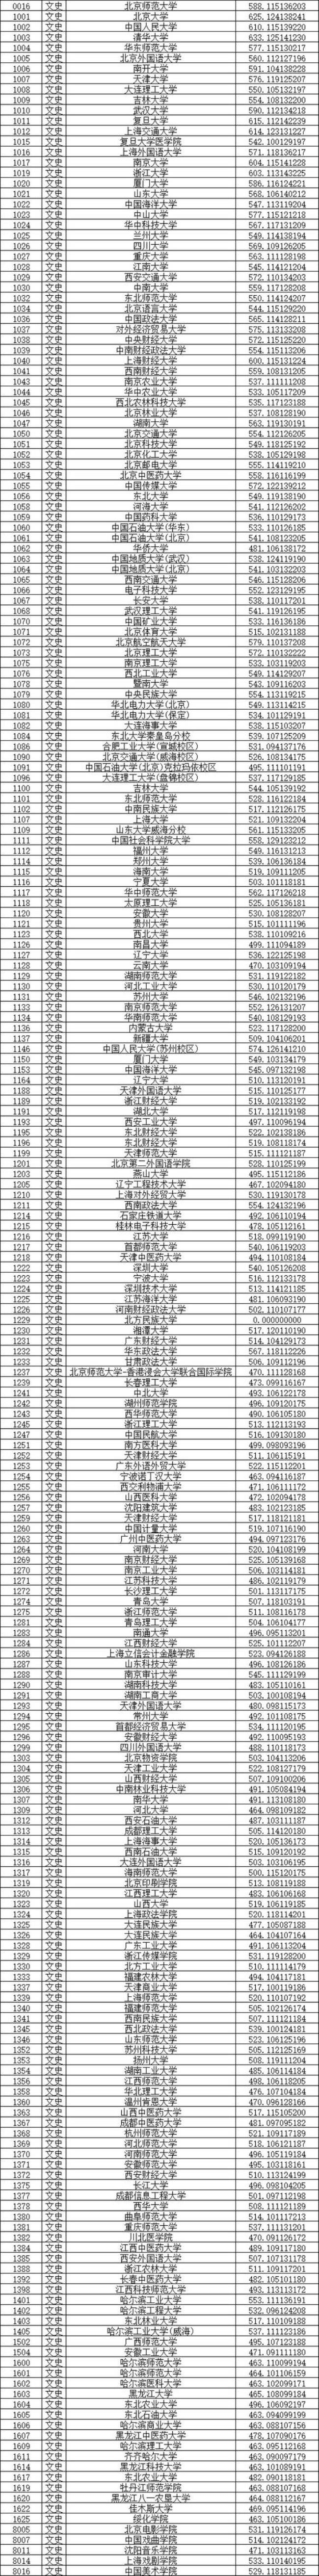 2022黑龙江高考二本预测多少分